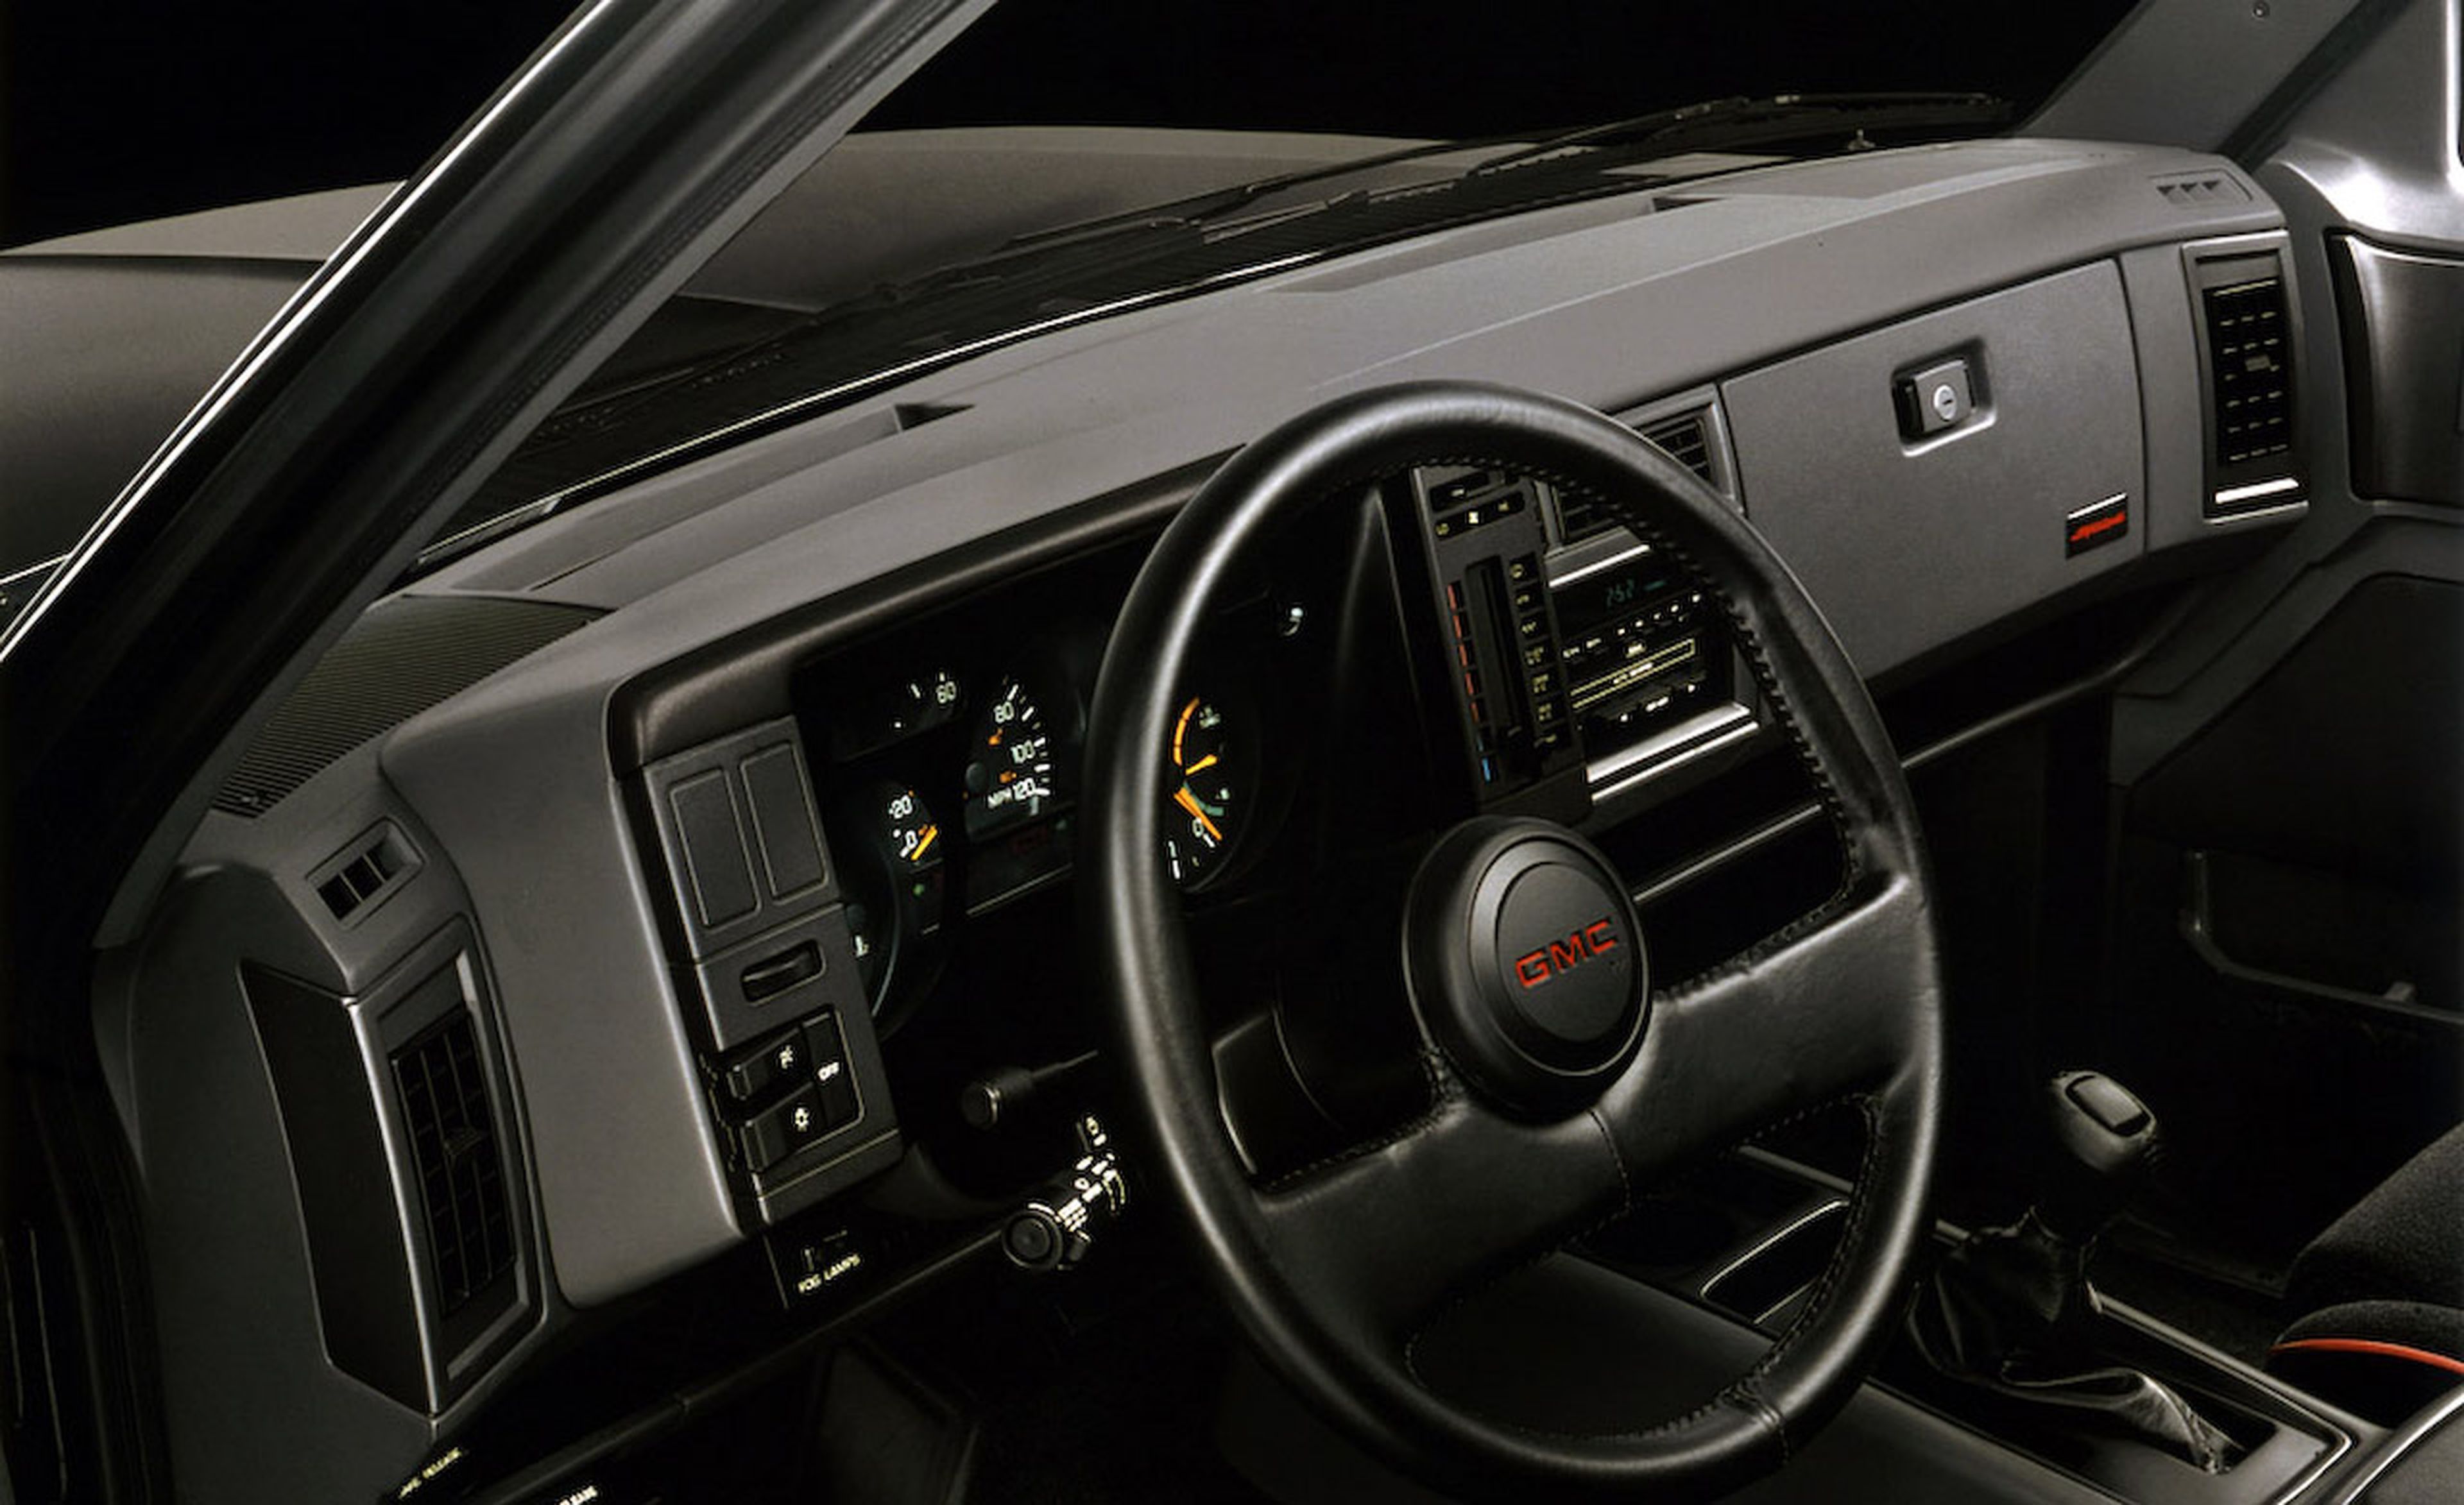 El interior del Syclone recibía detalles como asientos deportivos, volante de cuero y los relojes del Pontiac Sunbird Turbo.